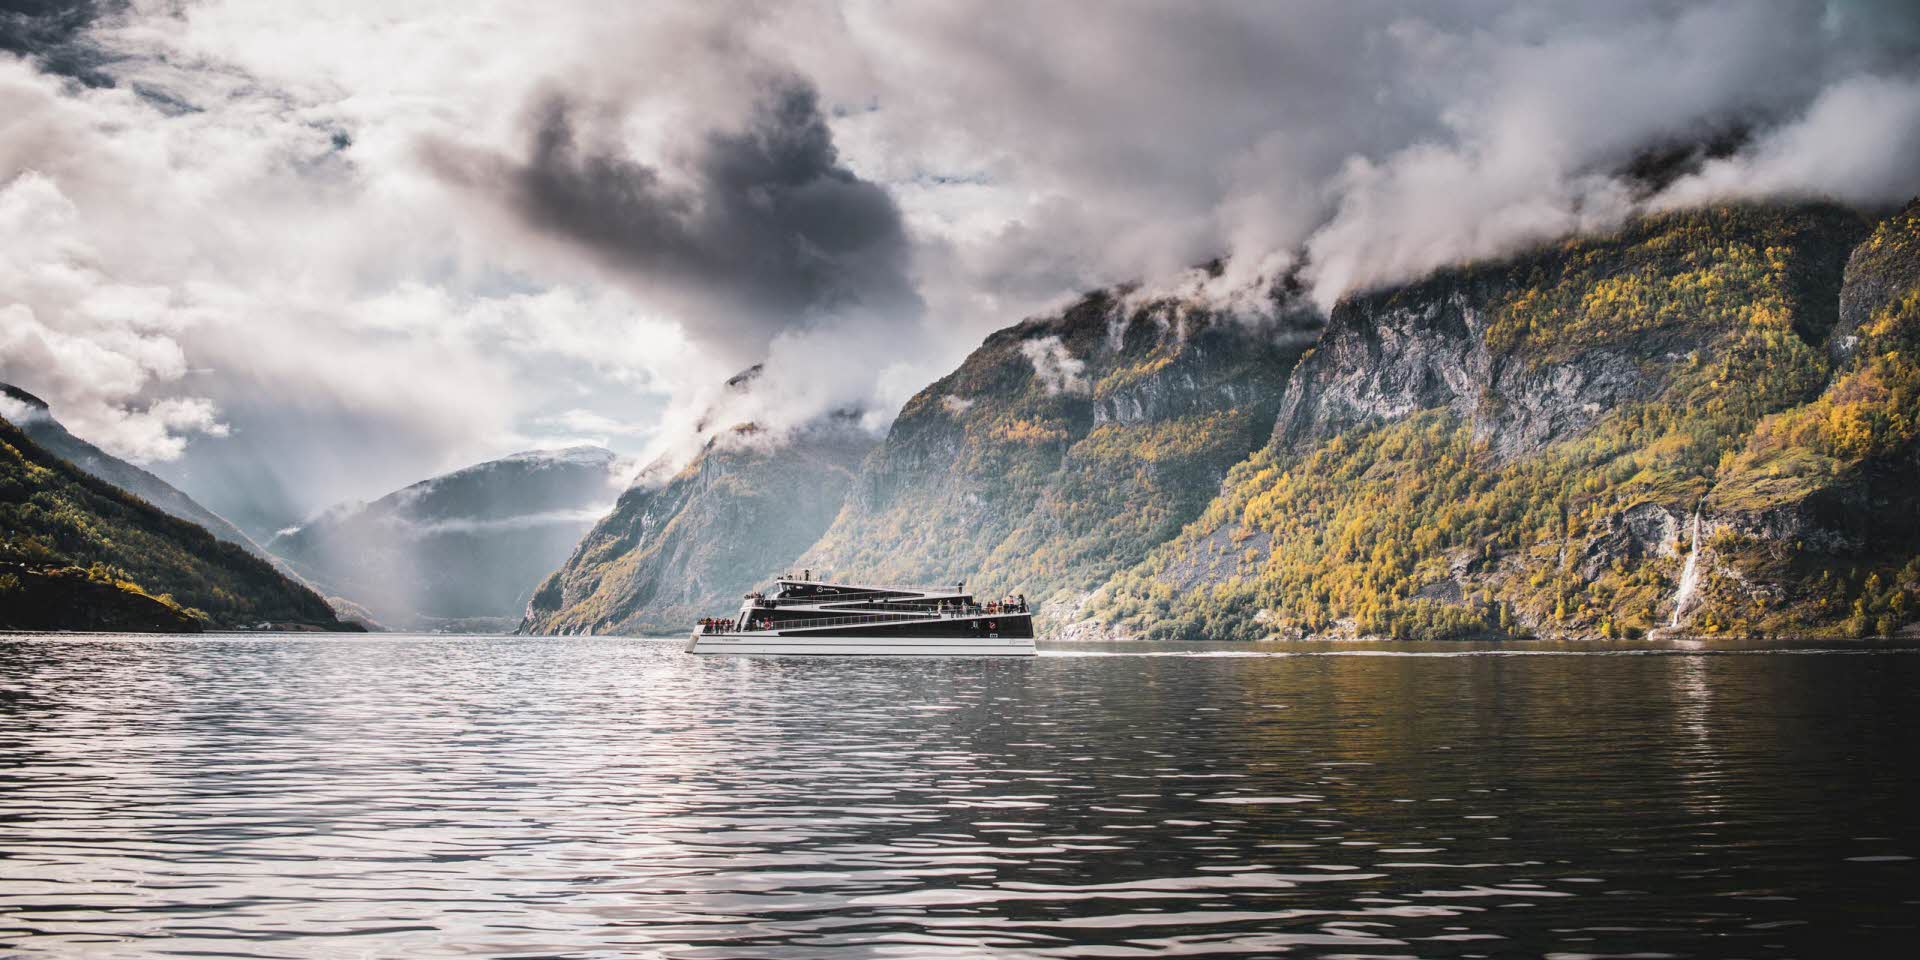 Vue d’ensemble du bateau Future of the Fjords naviguant en plein automne sur le célèbre Nærøyfjord, inscrit à l’UNESCO, dans une atmosphère calme et nuageuse